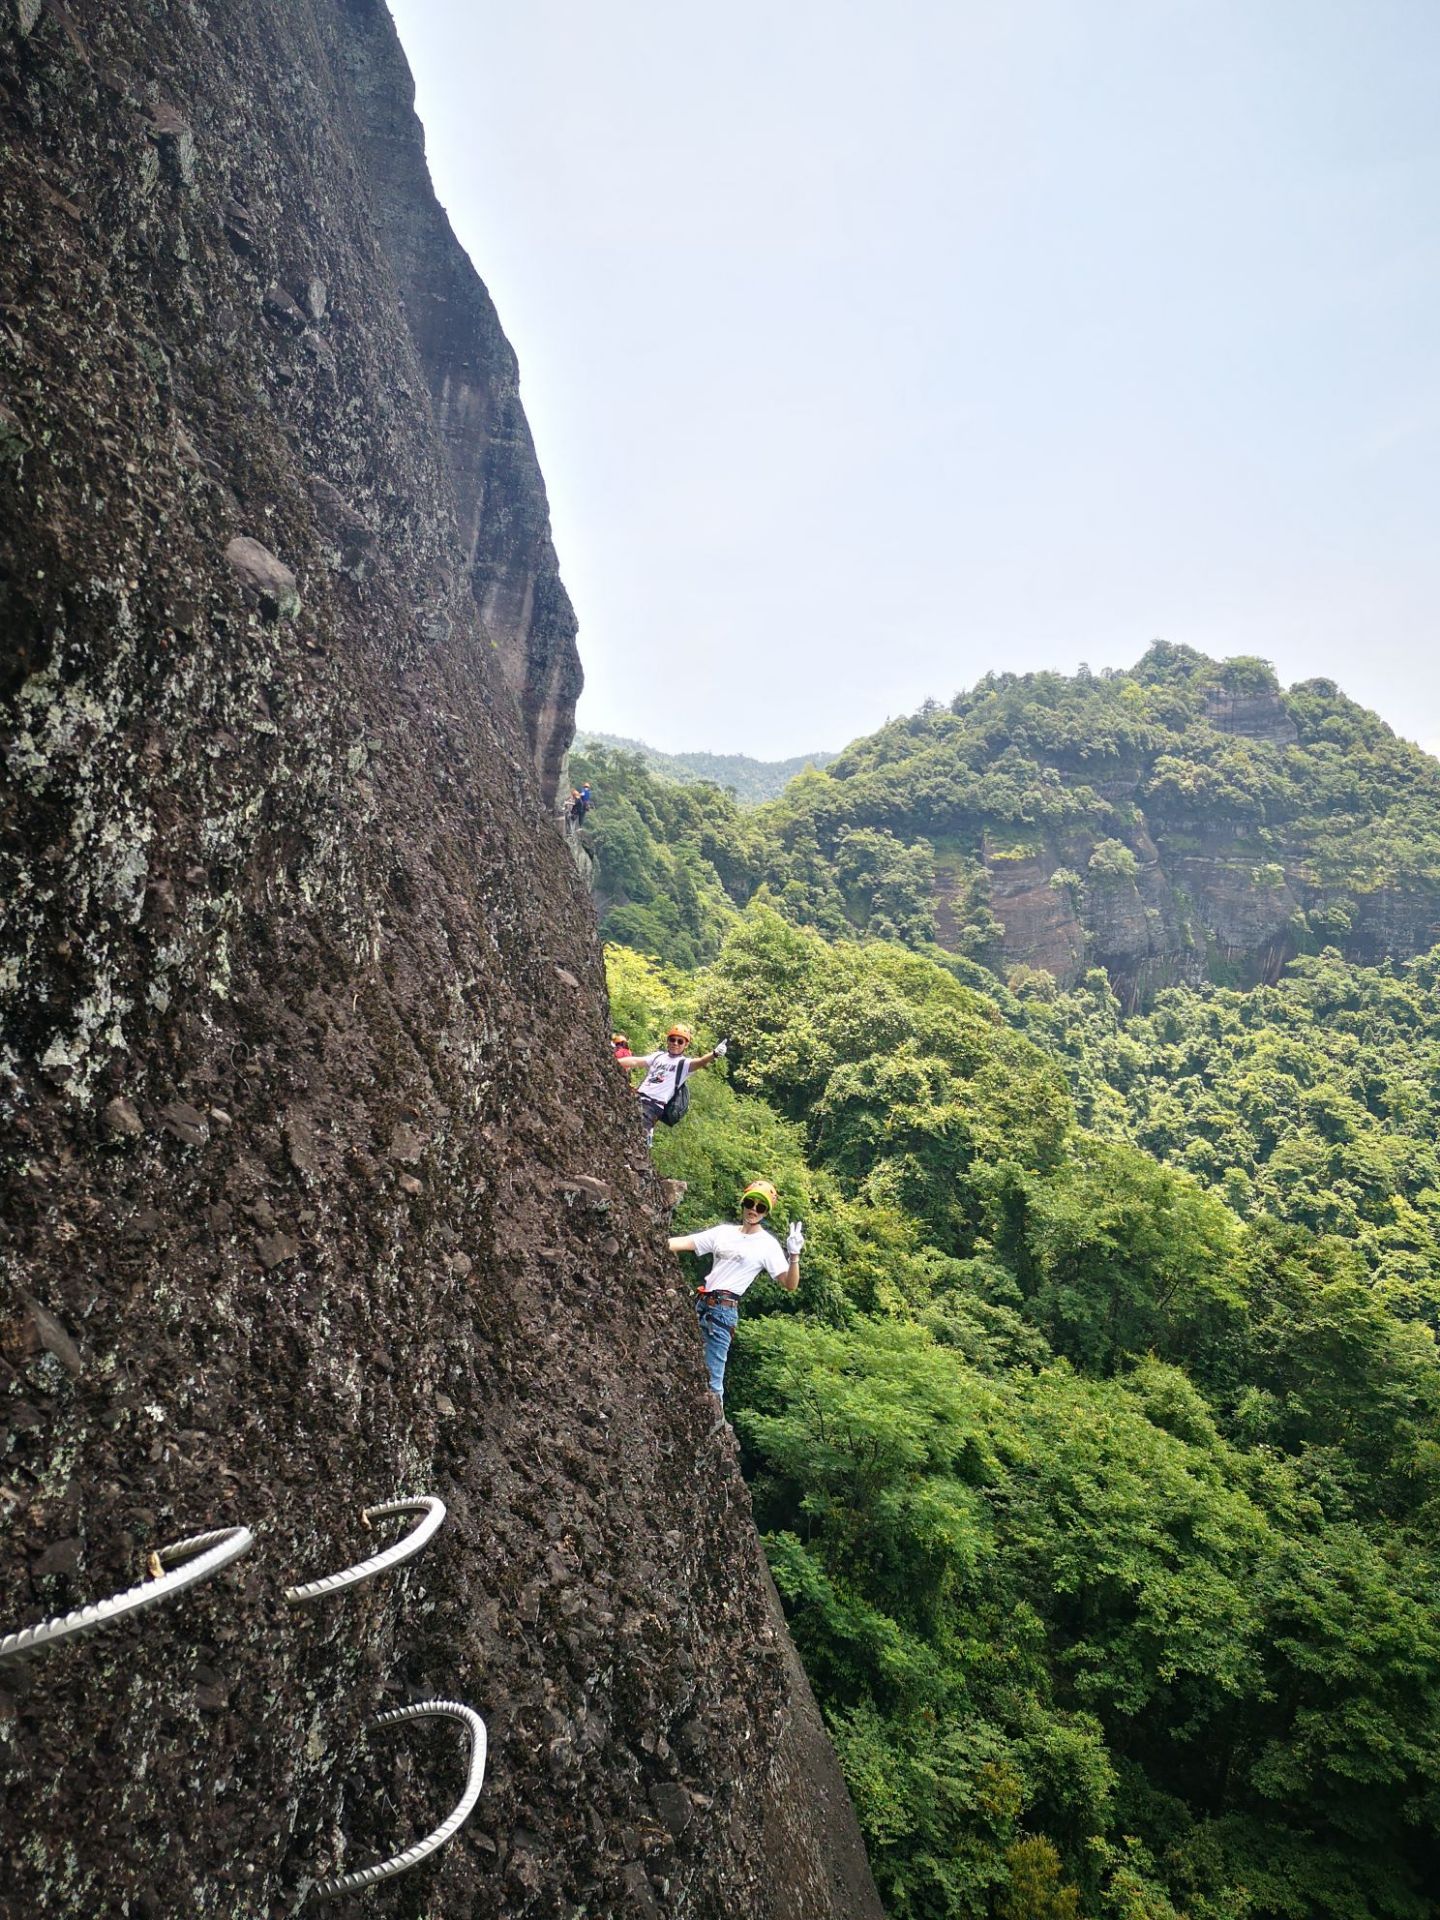 特意来东浒寨体验攀岩 那就一个刺激啊 都不敢相信 刚开始的那几十米自己是抖着双脚过来的 还好 自己完